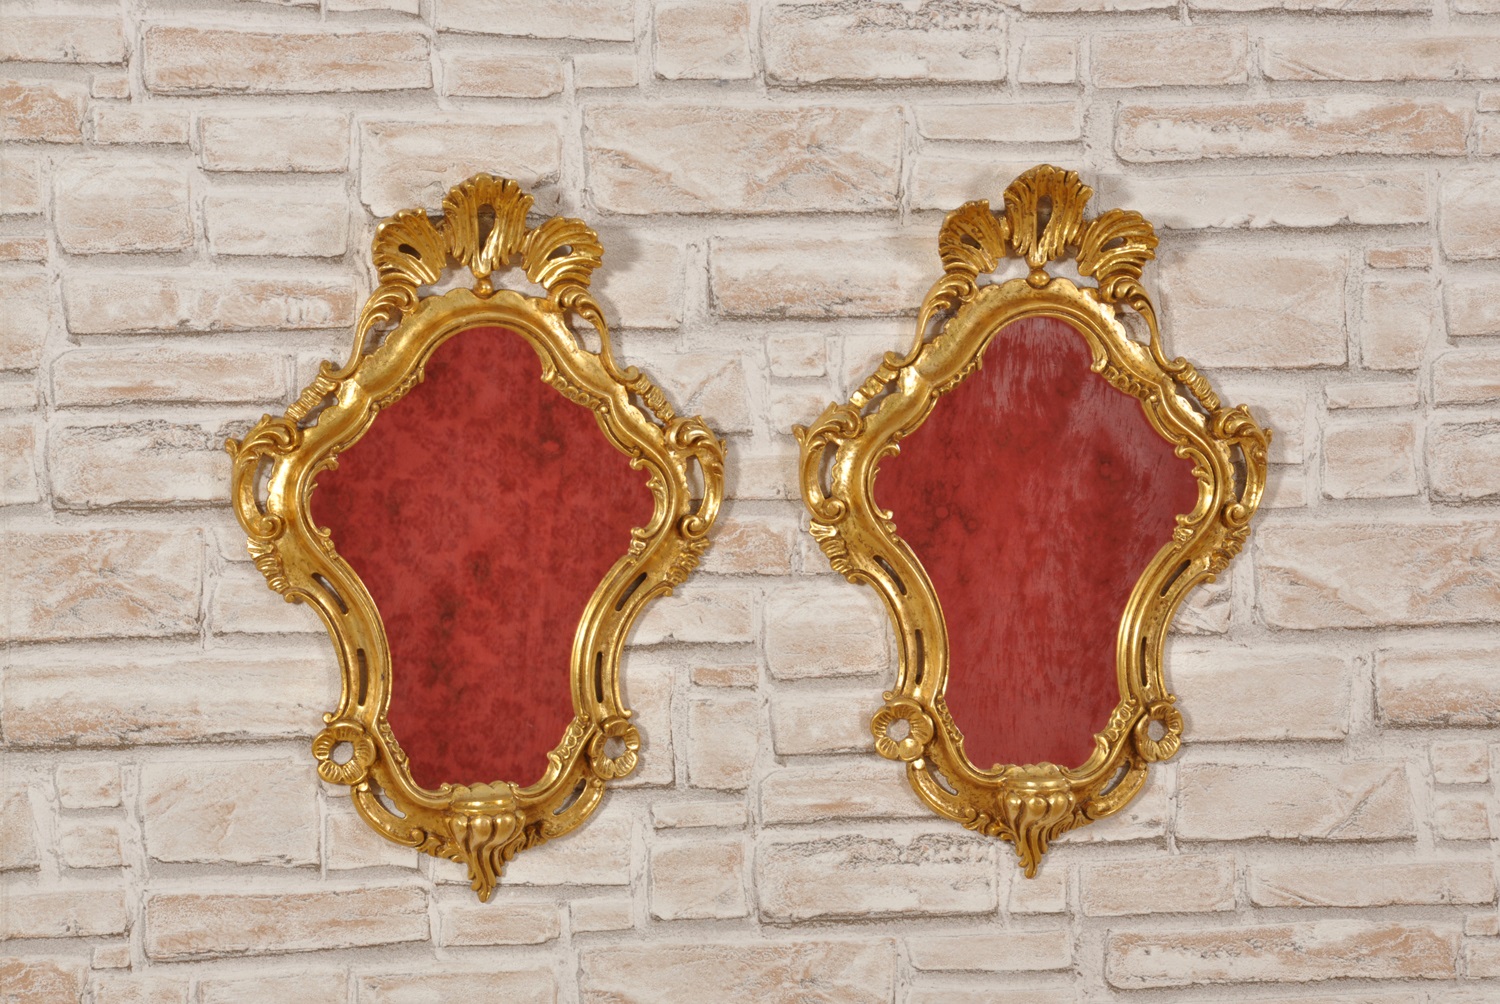 ventole veneziane di lusso intagliate a mano del 1700 specchiere dorate in foglia oro in stile Luigi XV barocco prodotte in piccole dimensioni sagomate a mano